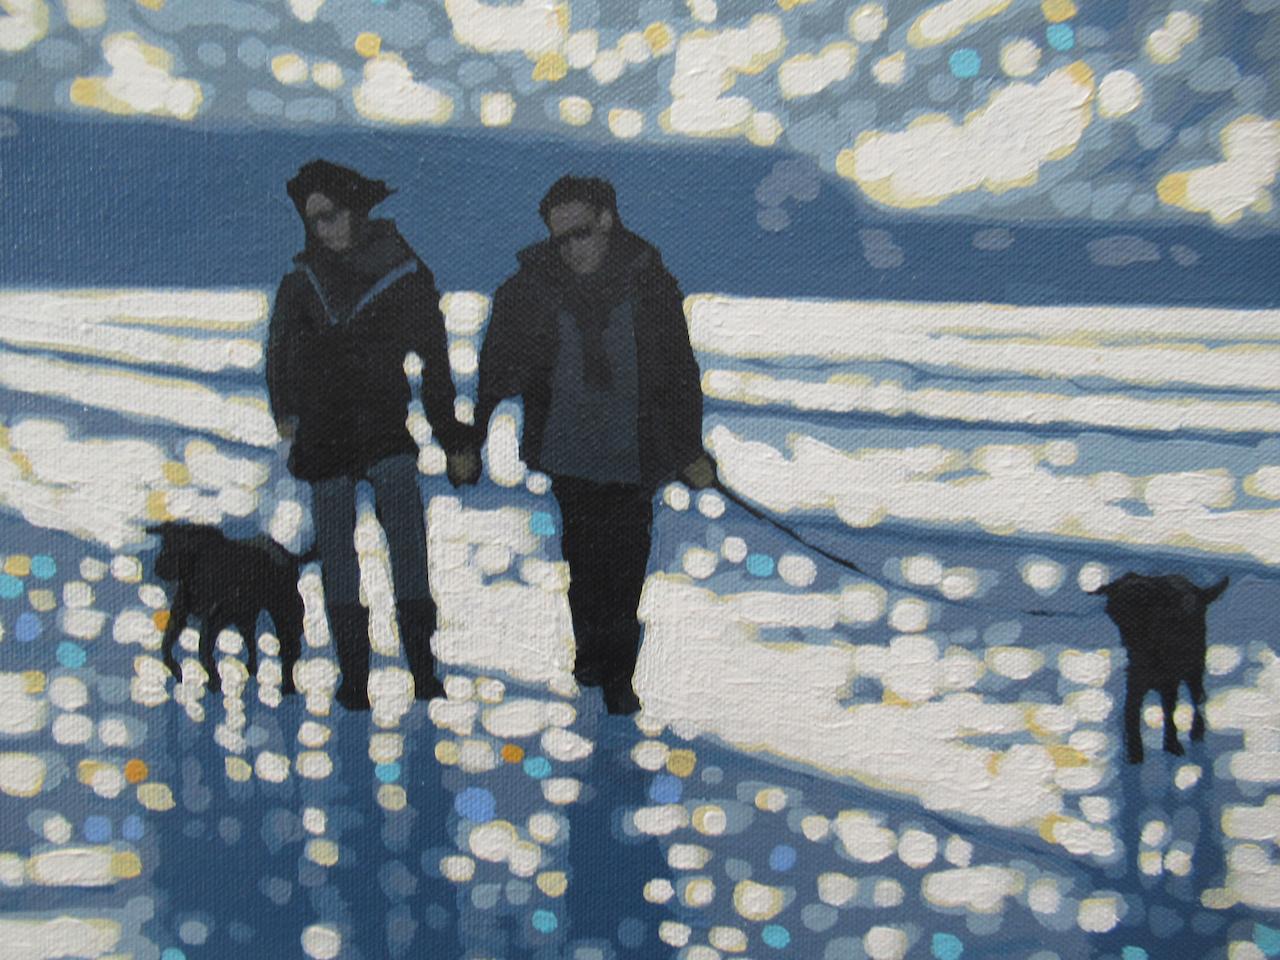 Promenade de plage lumineuse et briseuse est une peinture originale de Gordon Hunt. Il montre l'image d'un couple promenant ses chiens sur la plage. C'est un jour de brise lumineuse, avec des nuages qui passent et des éclairs de soleil qui créent